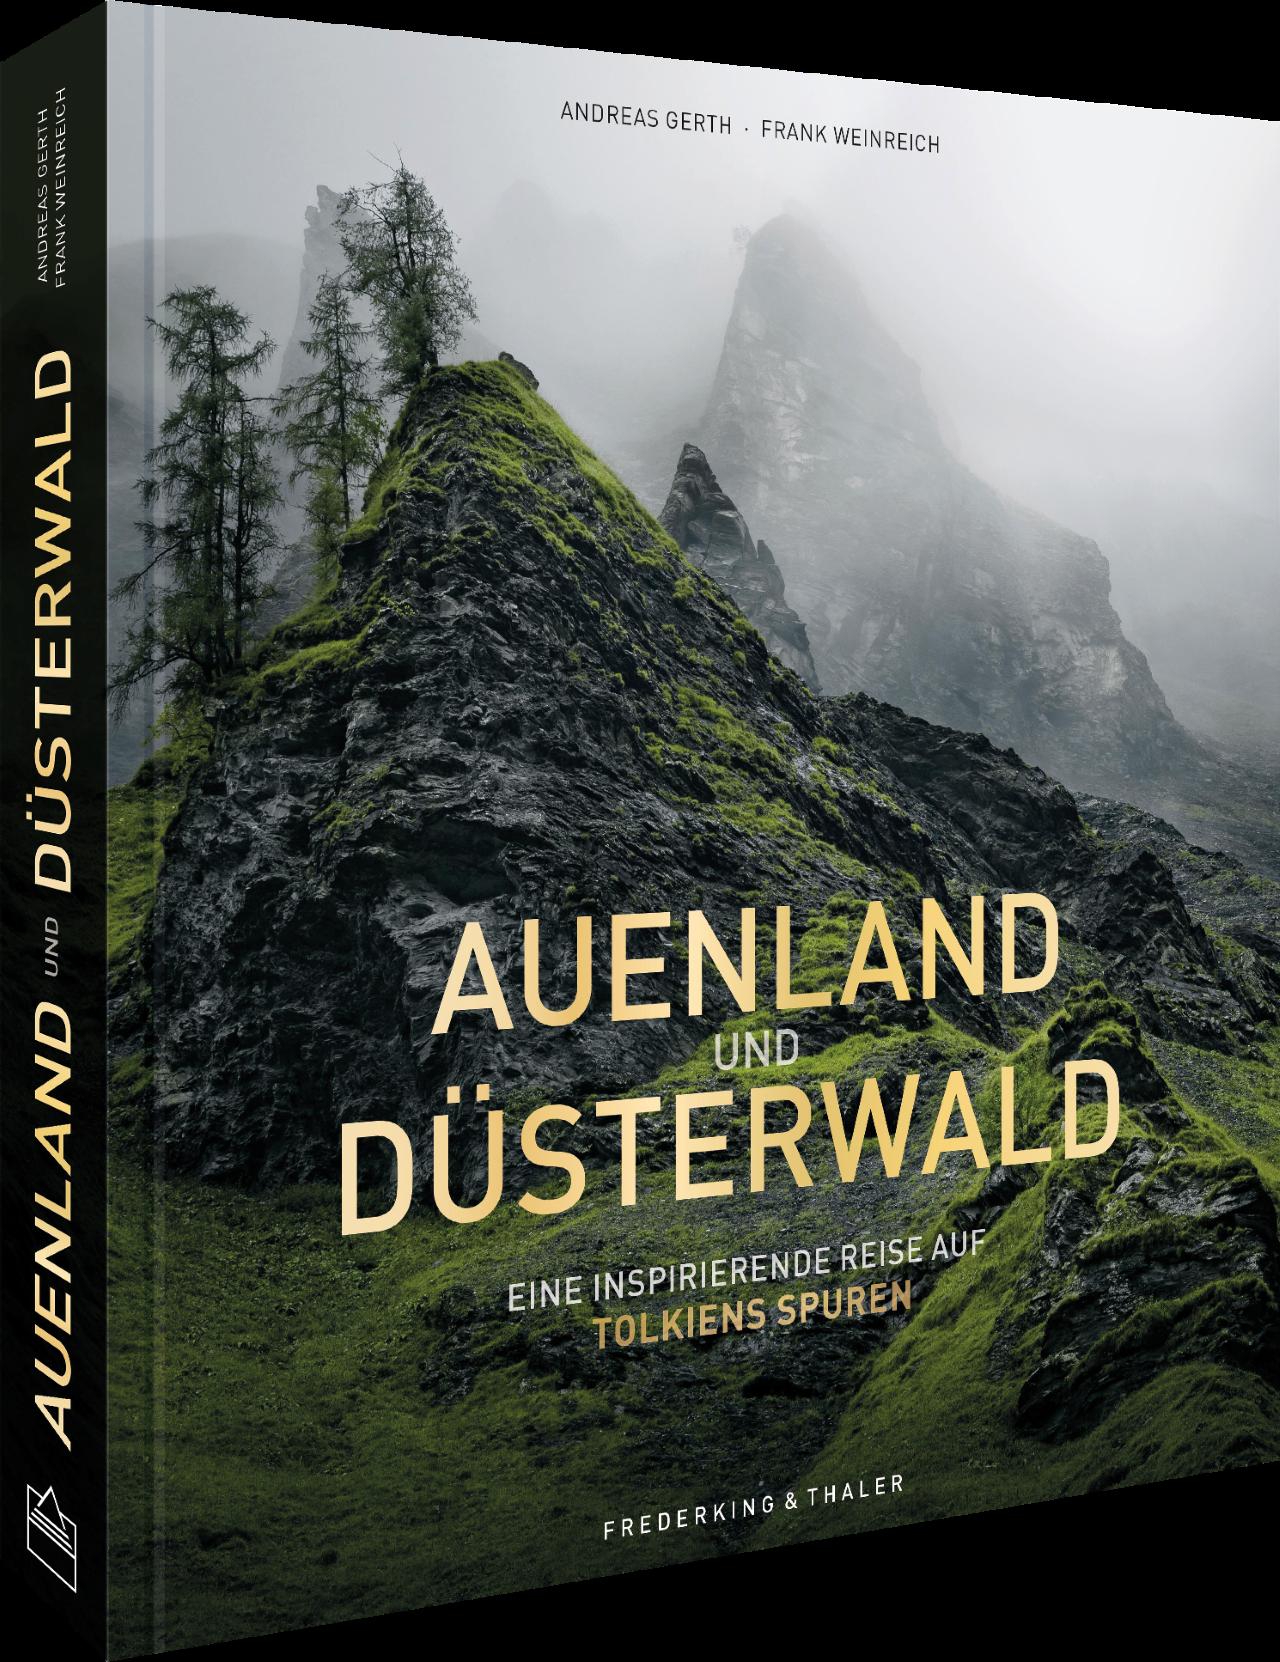 Fantasy Bildband – Auenland und Düsterwald: Eine fotografische Reise durch Mittelerde inspiriert von Tolkiens Legenden.: Eine fotografische Reise ... und der neuen Serie “Die Ringe der Macht”.